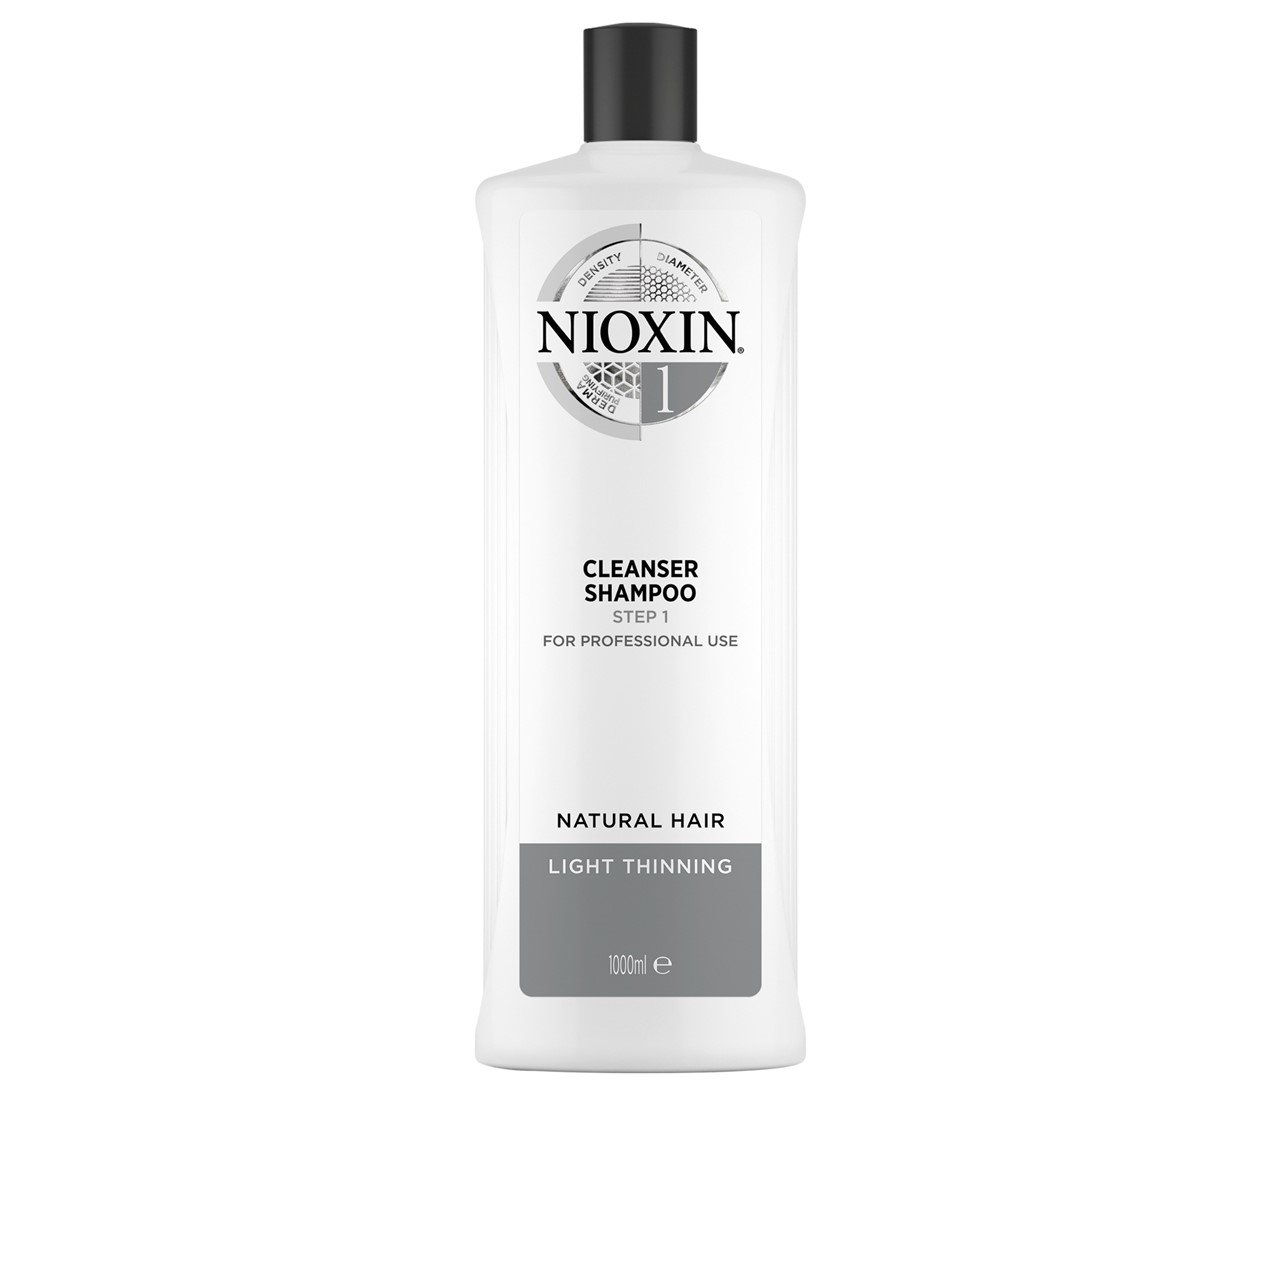 Nioxin System 1 Cleanser Shampoo 1L (33.81fl oz)